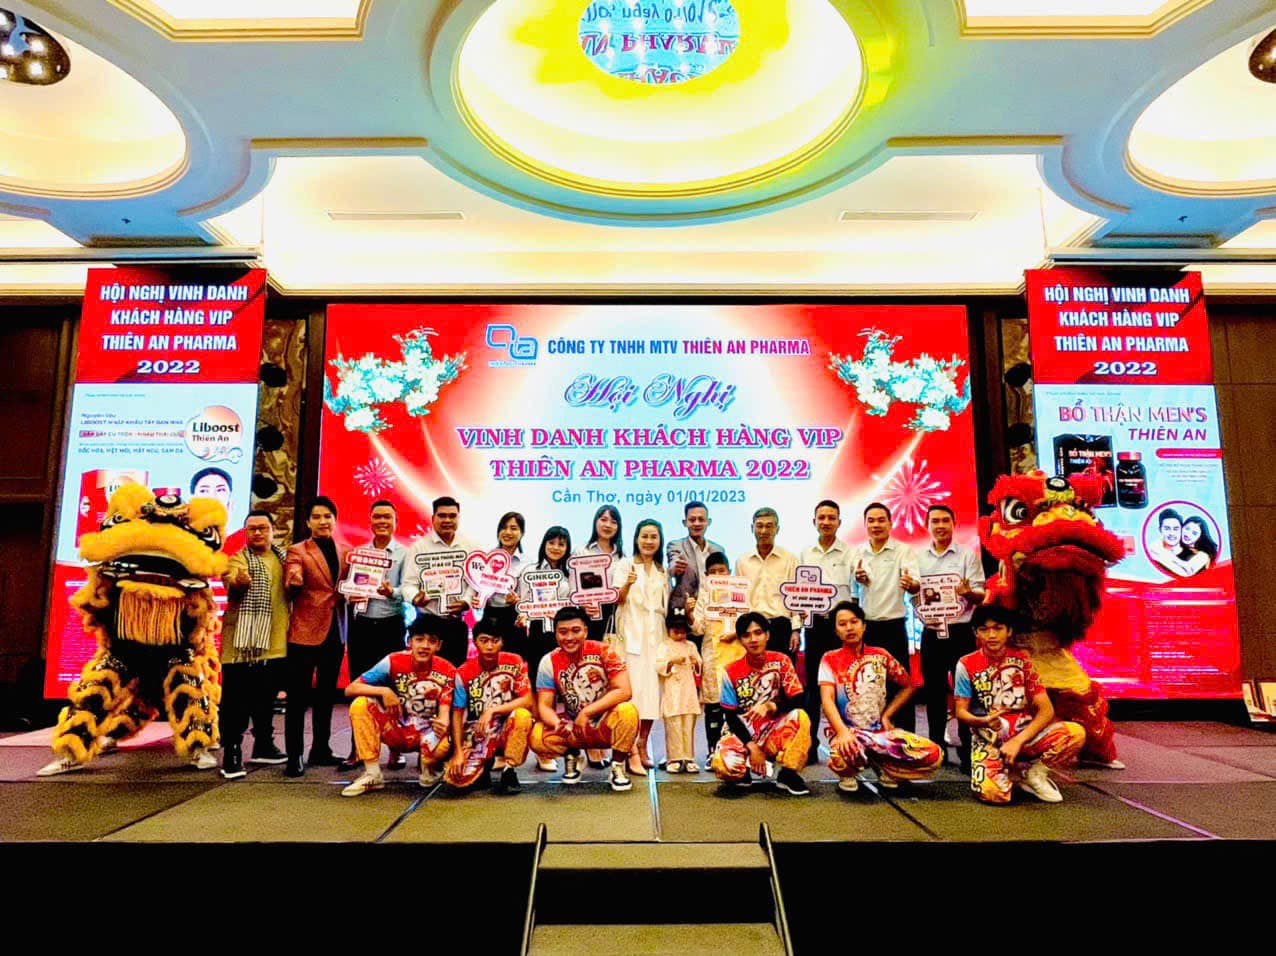 Công ty TNHH MTV Thiên An Pharma đã tổ chức Hội nghị Vinh danh khách hàng VIP